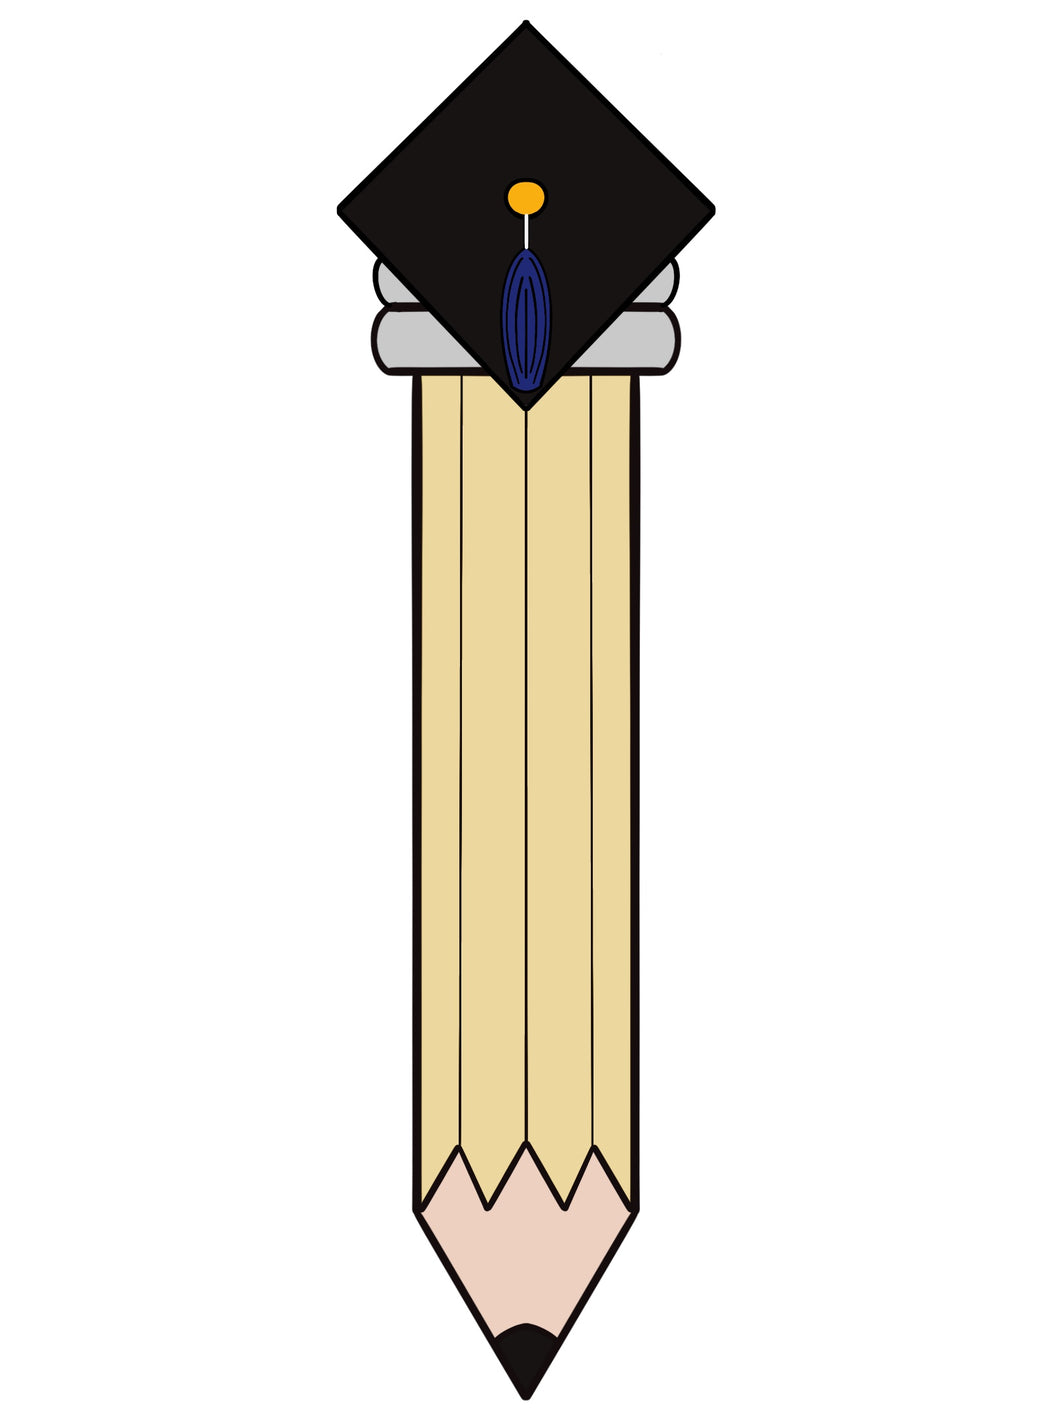 Grad Hat Pencil